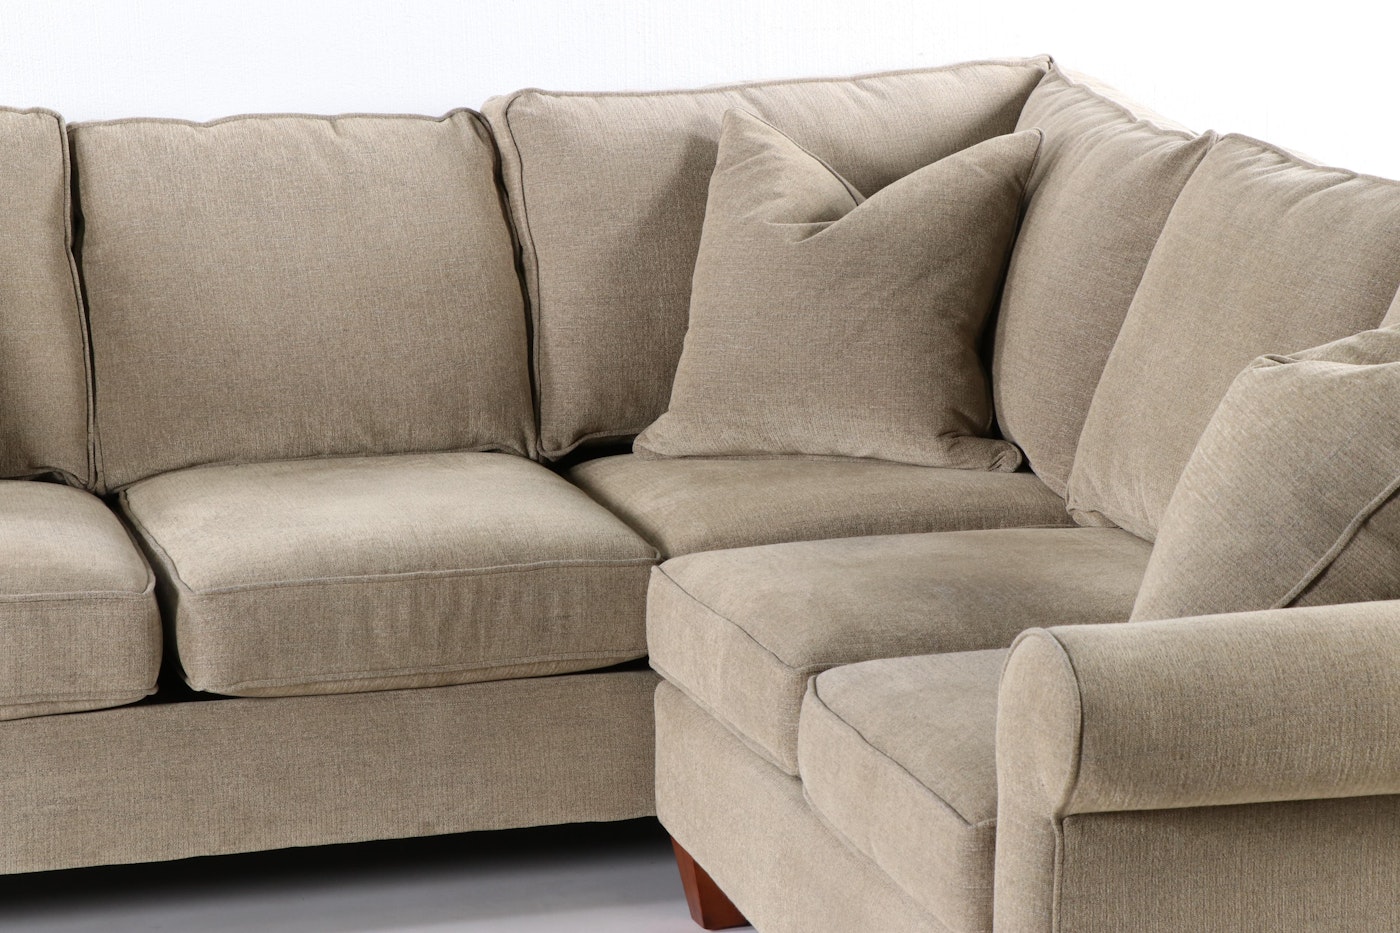 havertys furniture sofa bed